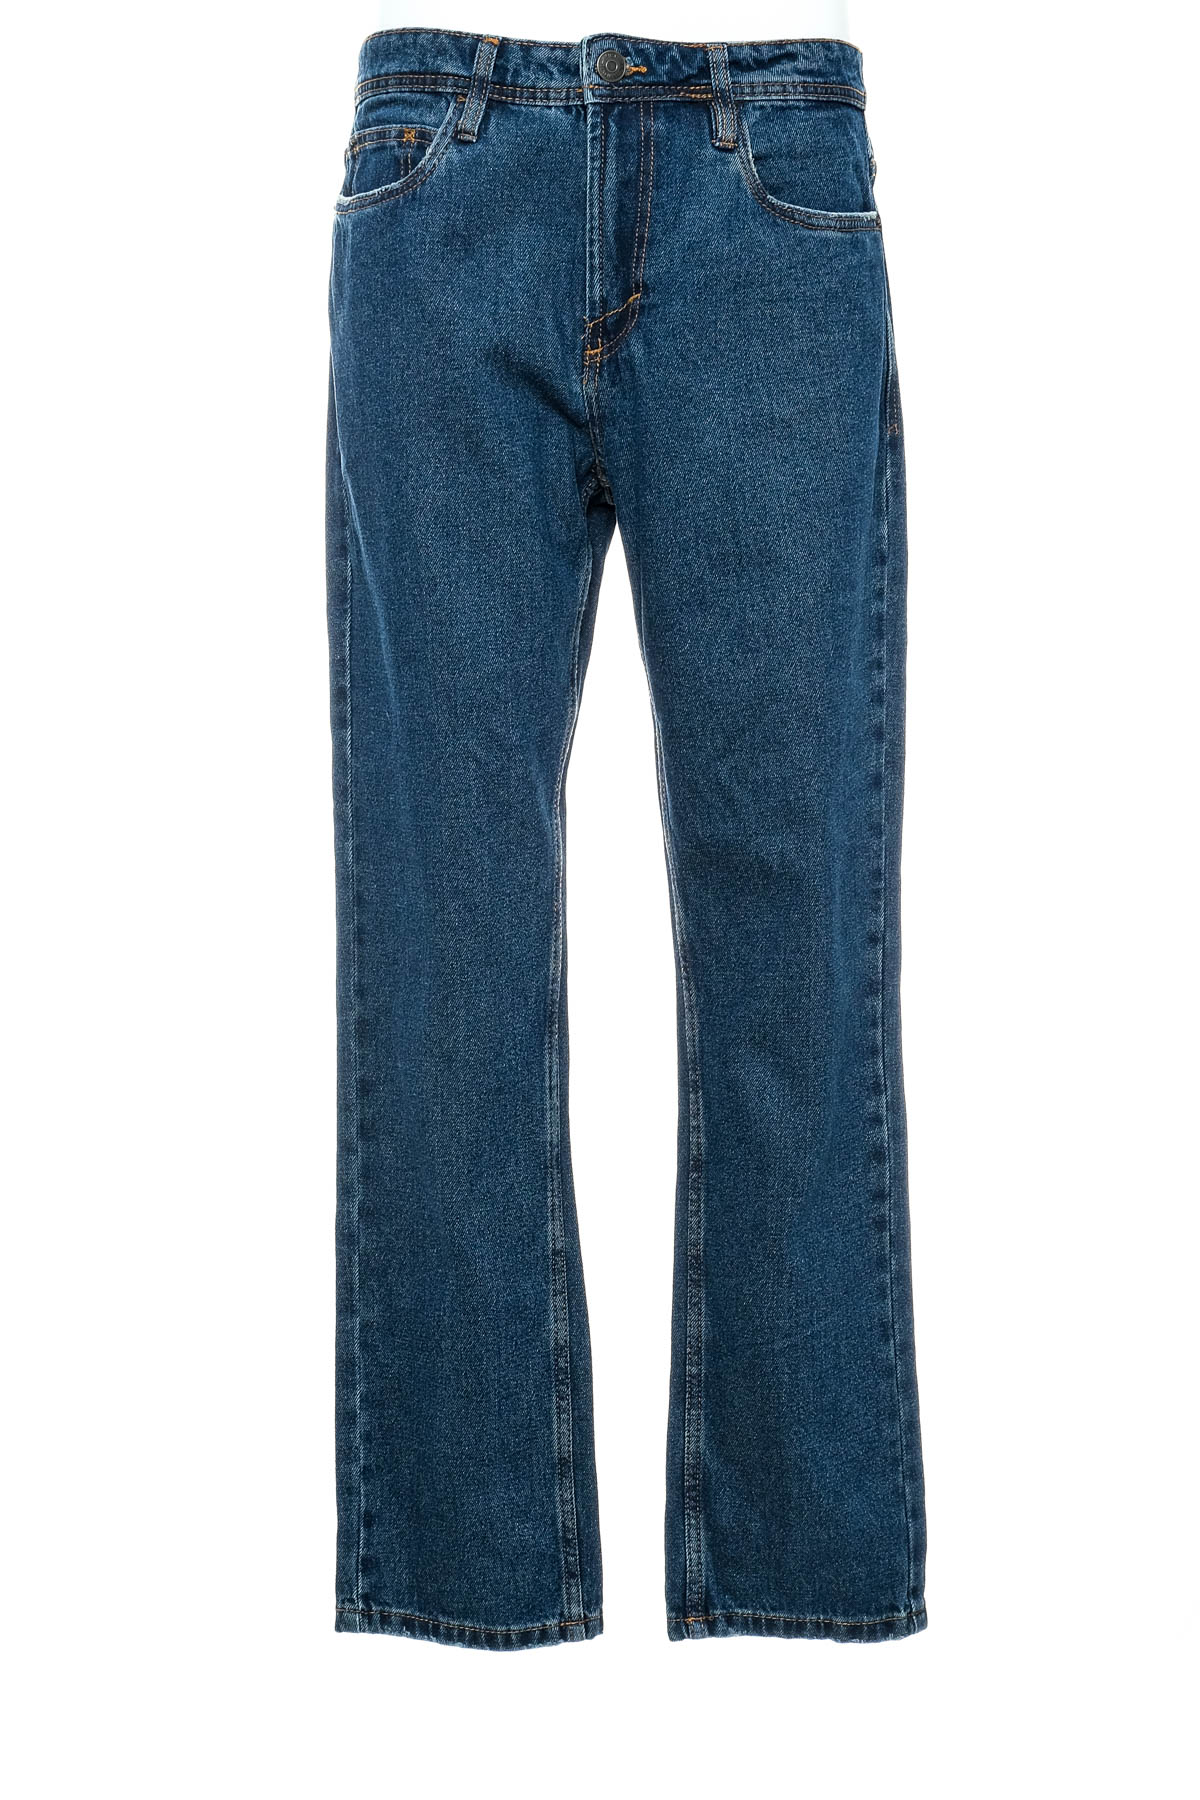 Jeans pentru bărbăți - Sinsay - 0